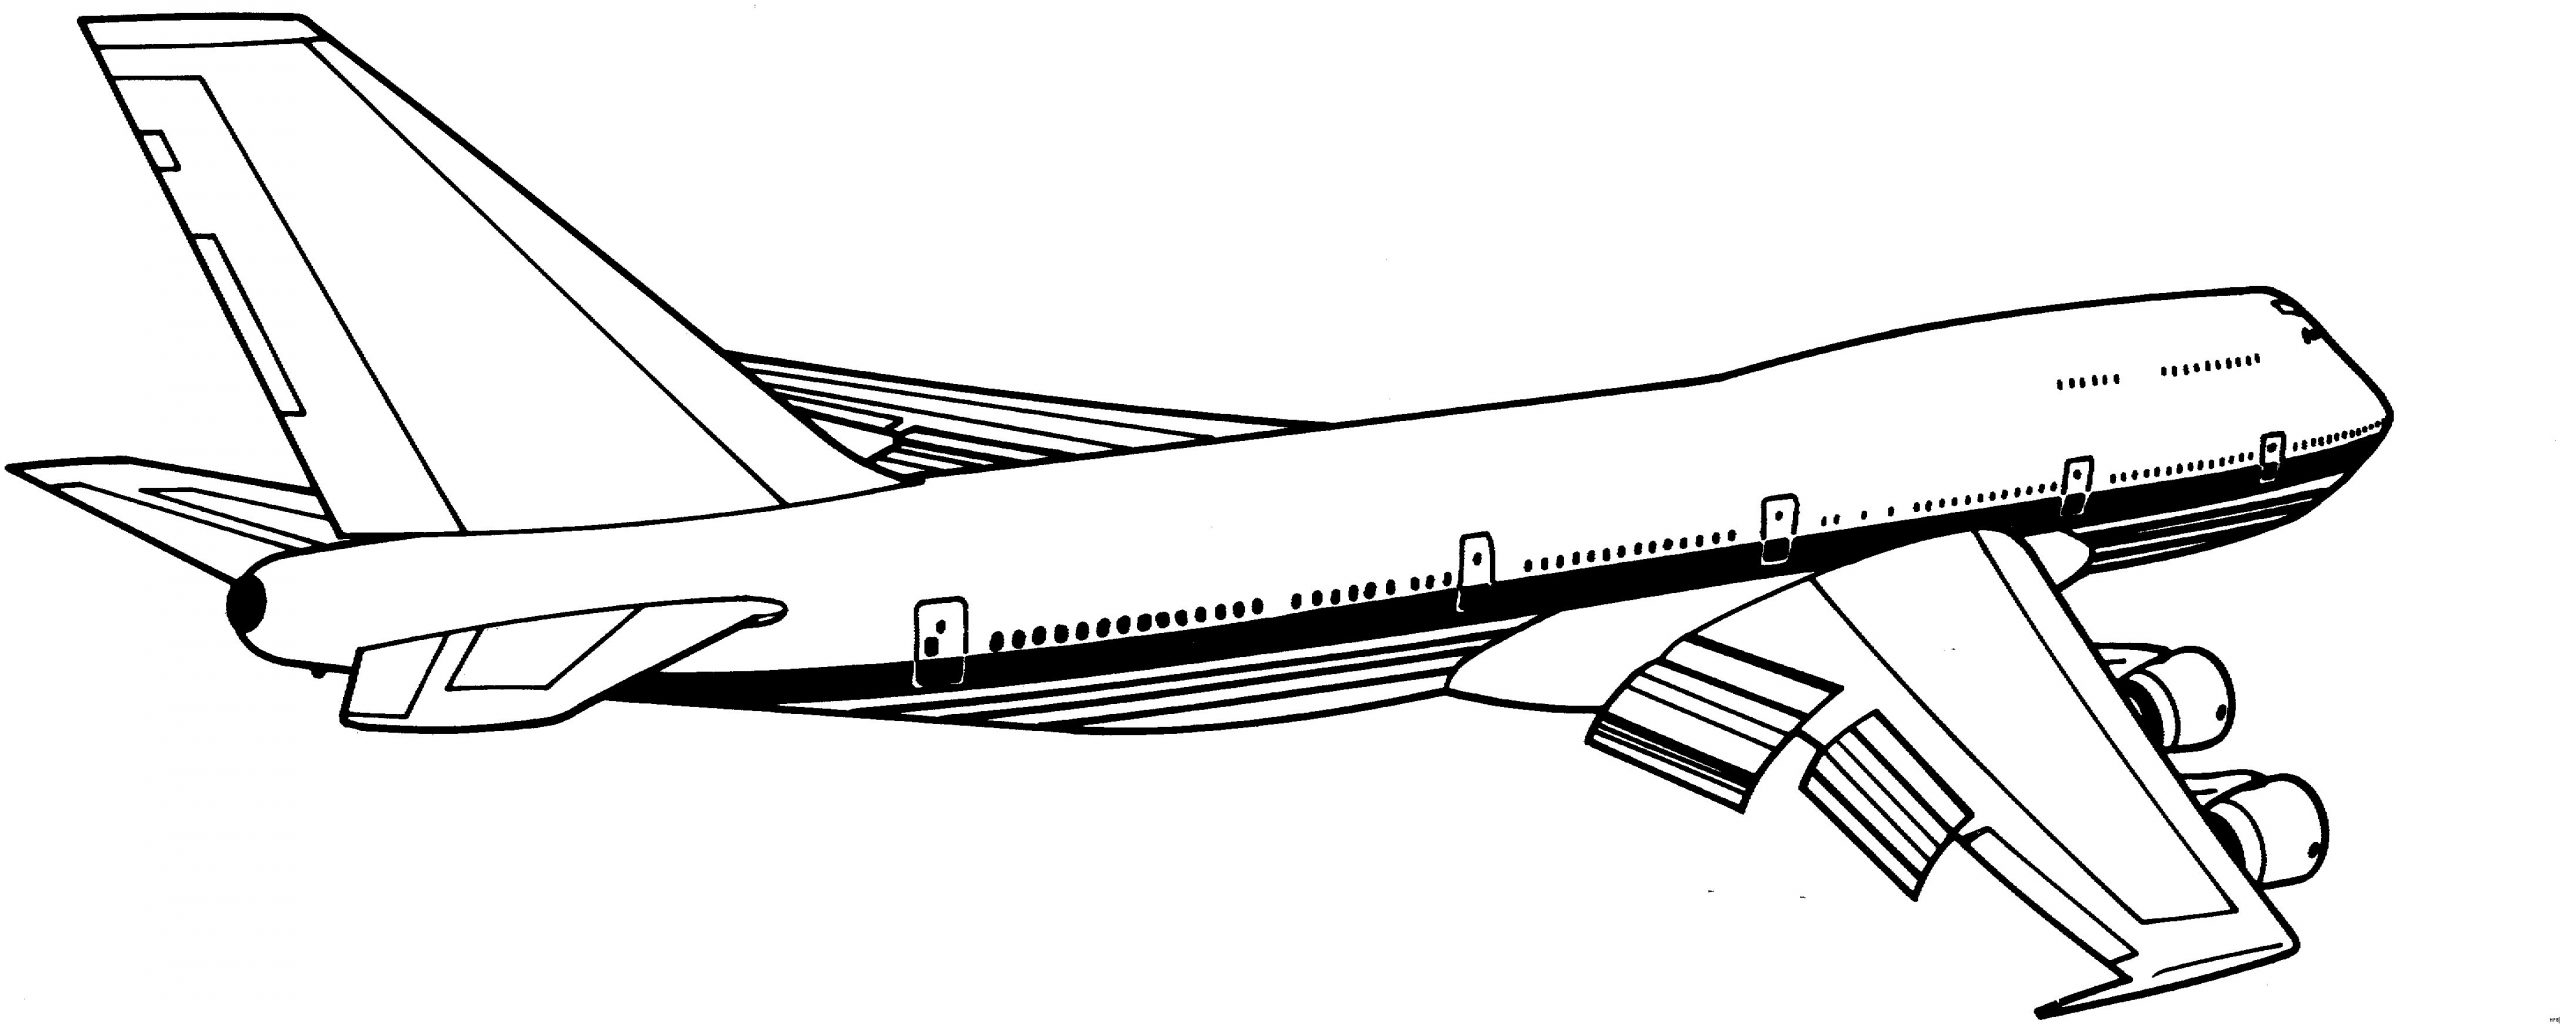 Malvorlagen Flugzeug Für Kinder Malvorlagen Flugzeug verwandt mit Flugzeug Malvorlage